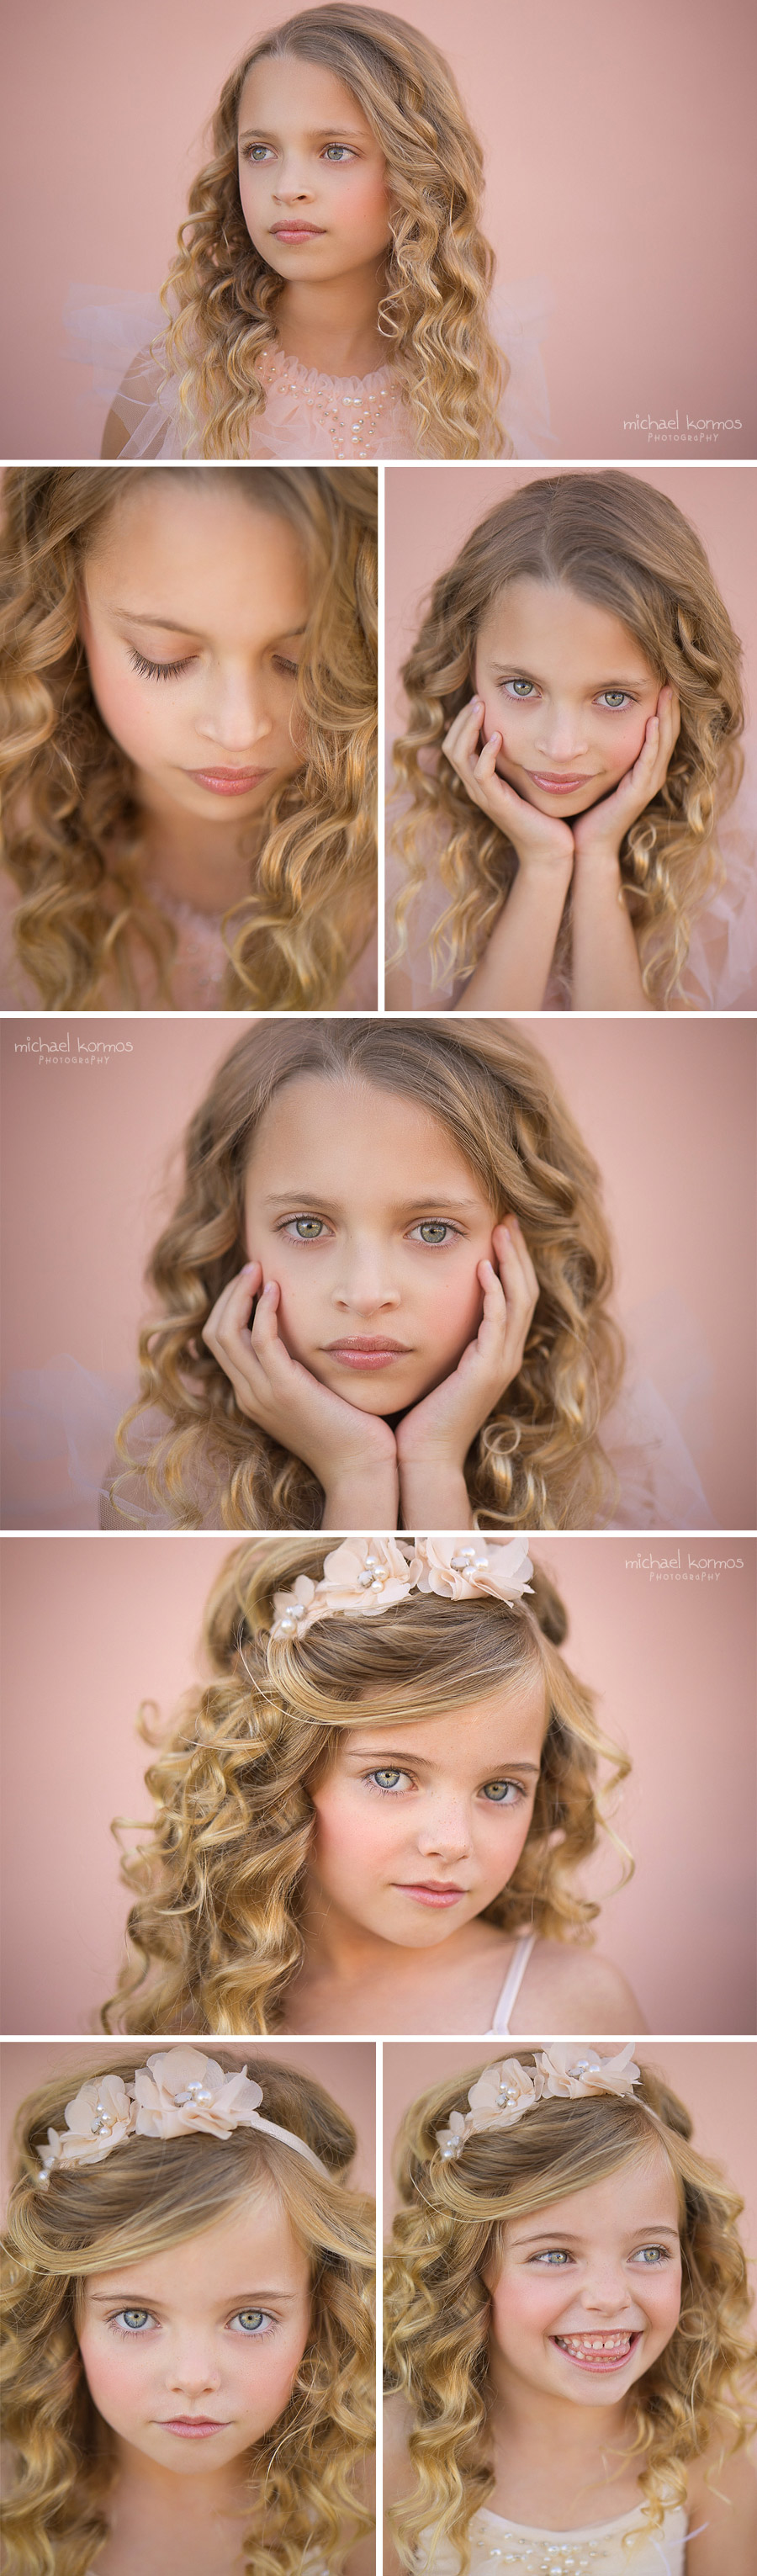 nyc child model headshot photography